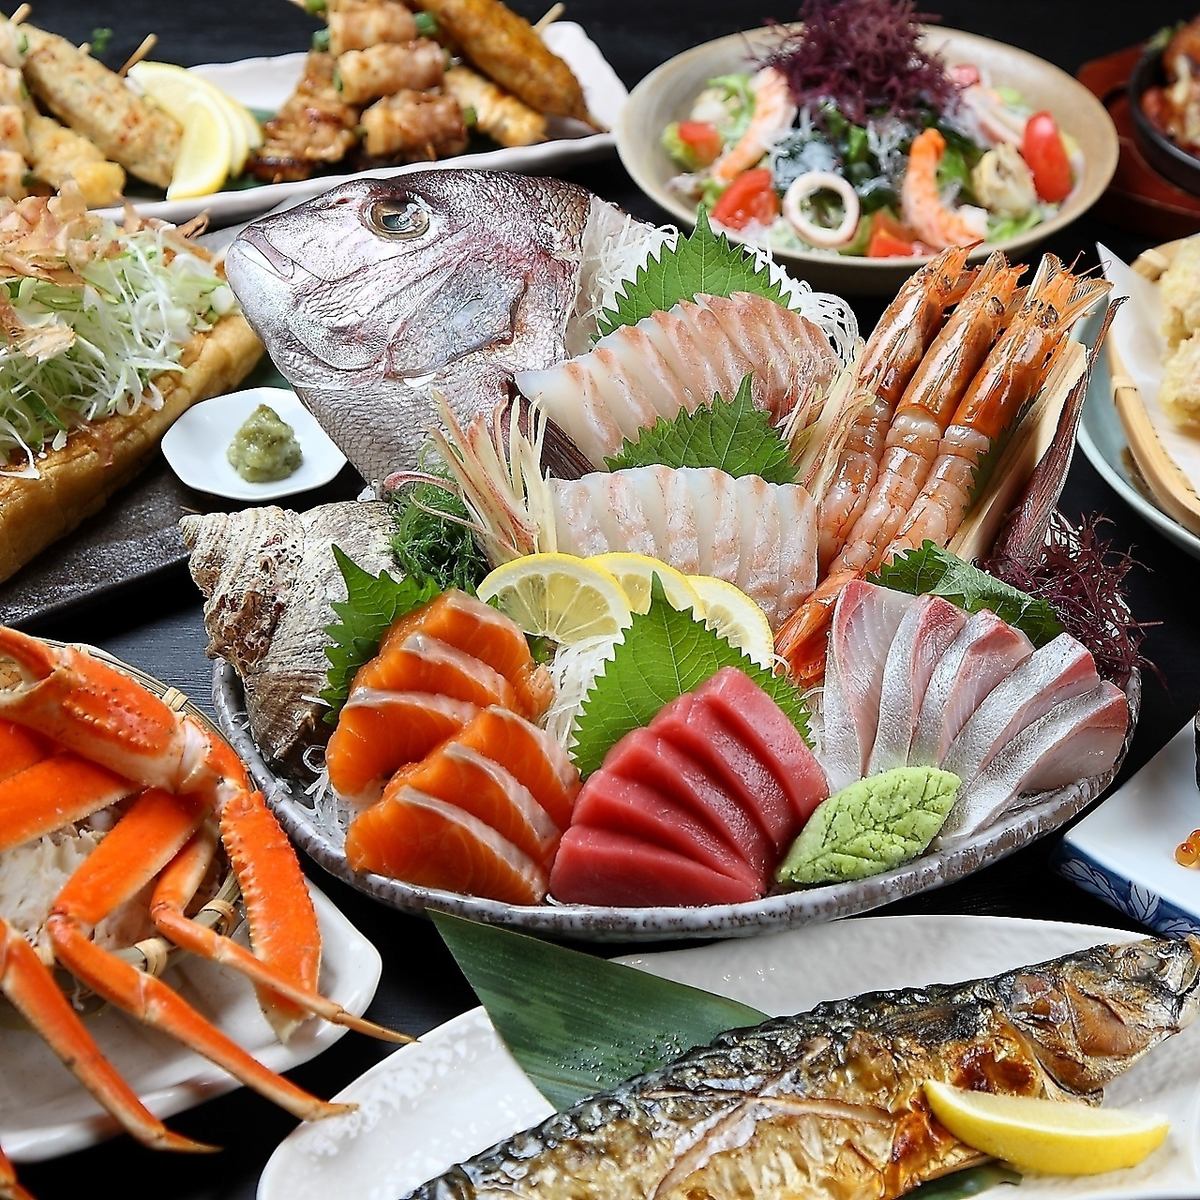 講究新鮮度和品質的鮮魚拼盤是本店的招牌菜之一。